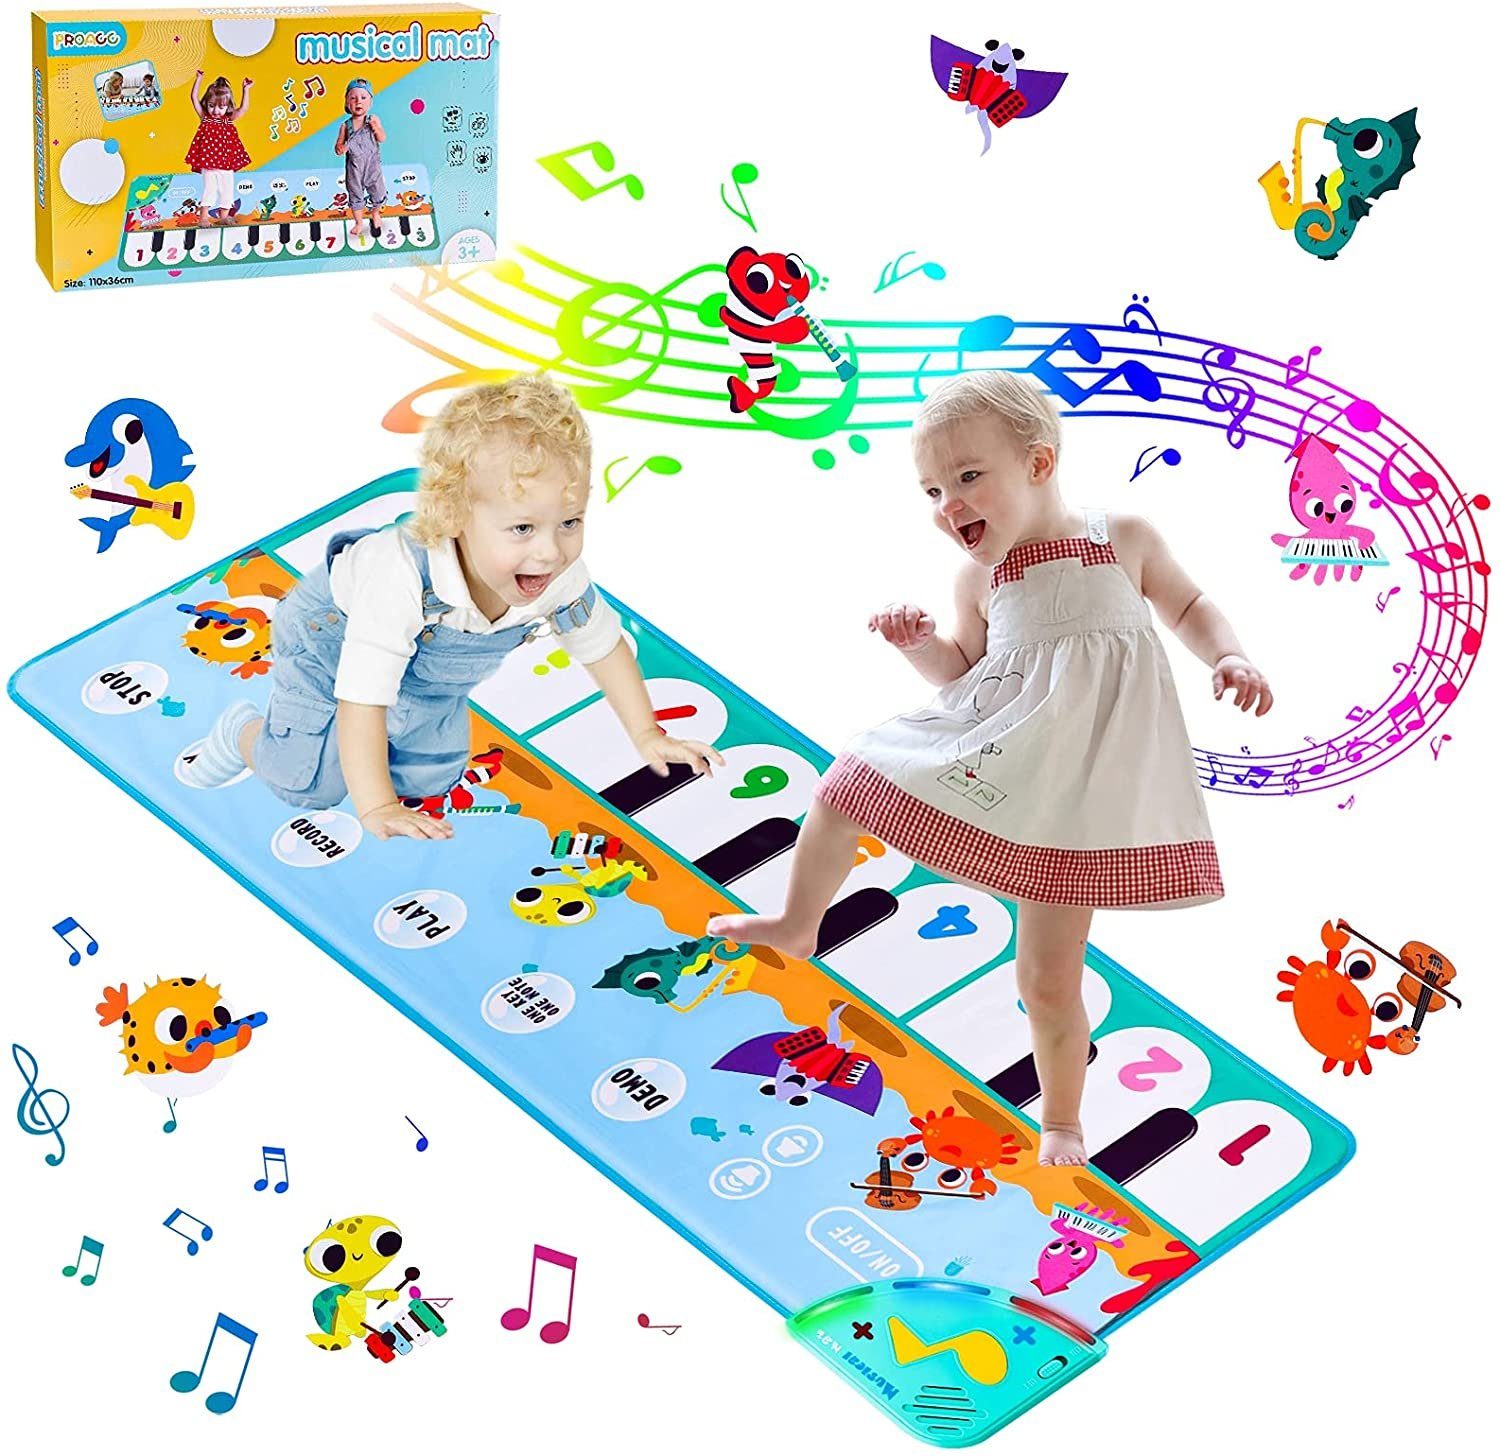 Kinder Musikmatte Spielzeug Ab 1 2 3 4 5 6 Jahre Mädchen Junge Lernspielzeug Neu 